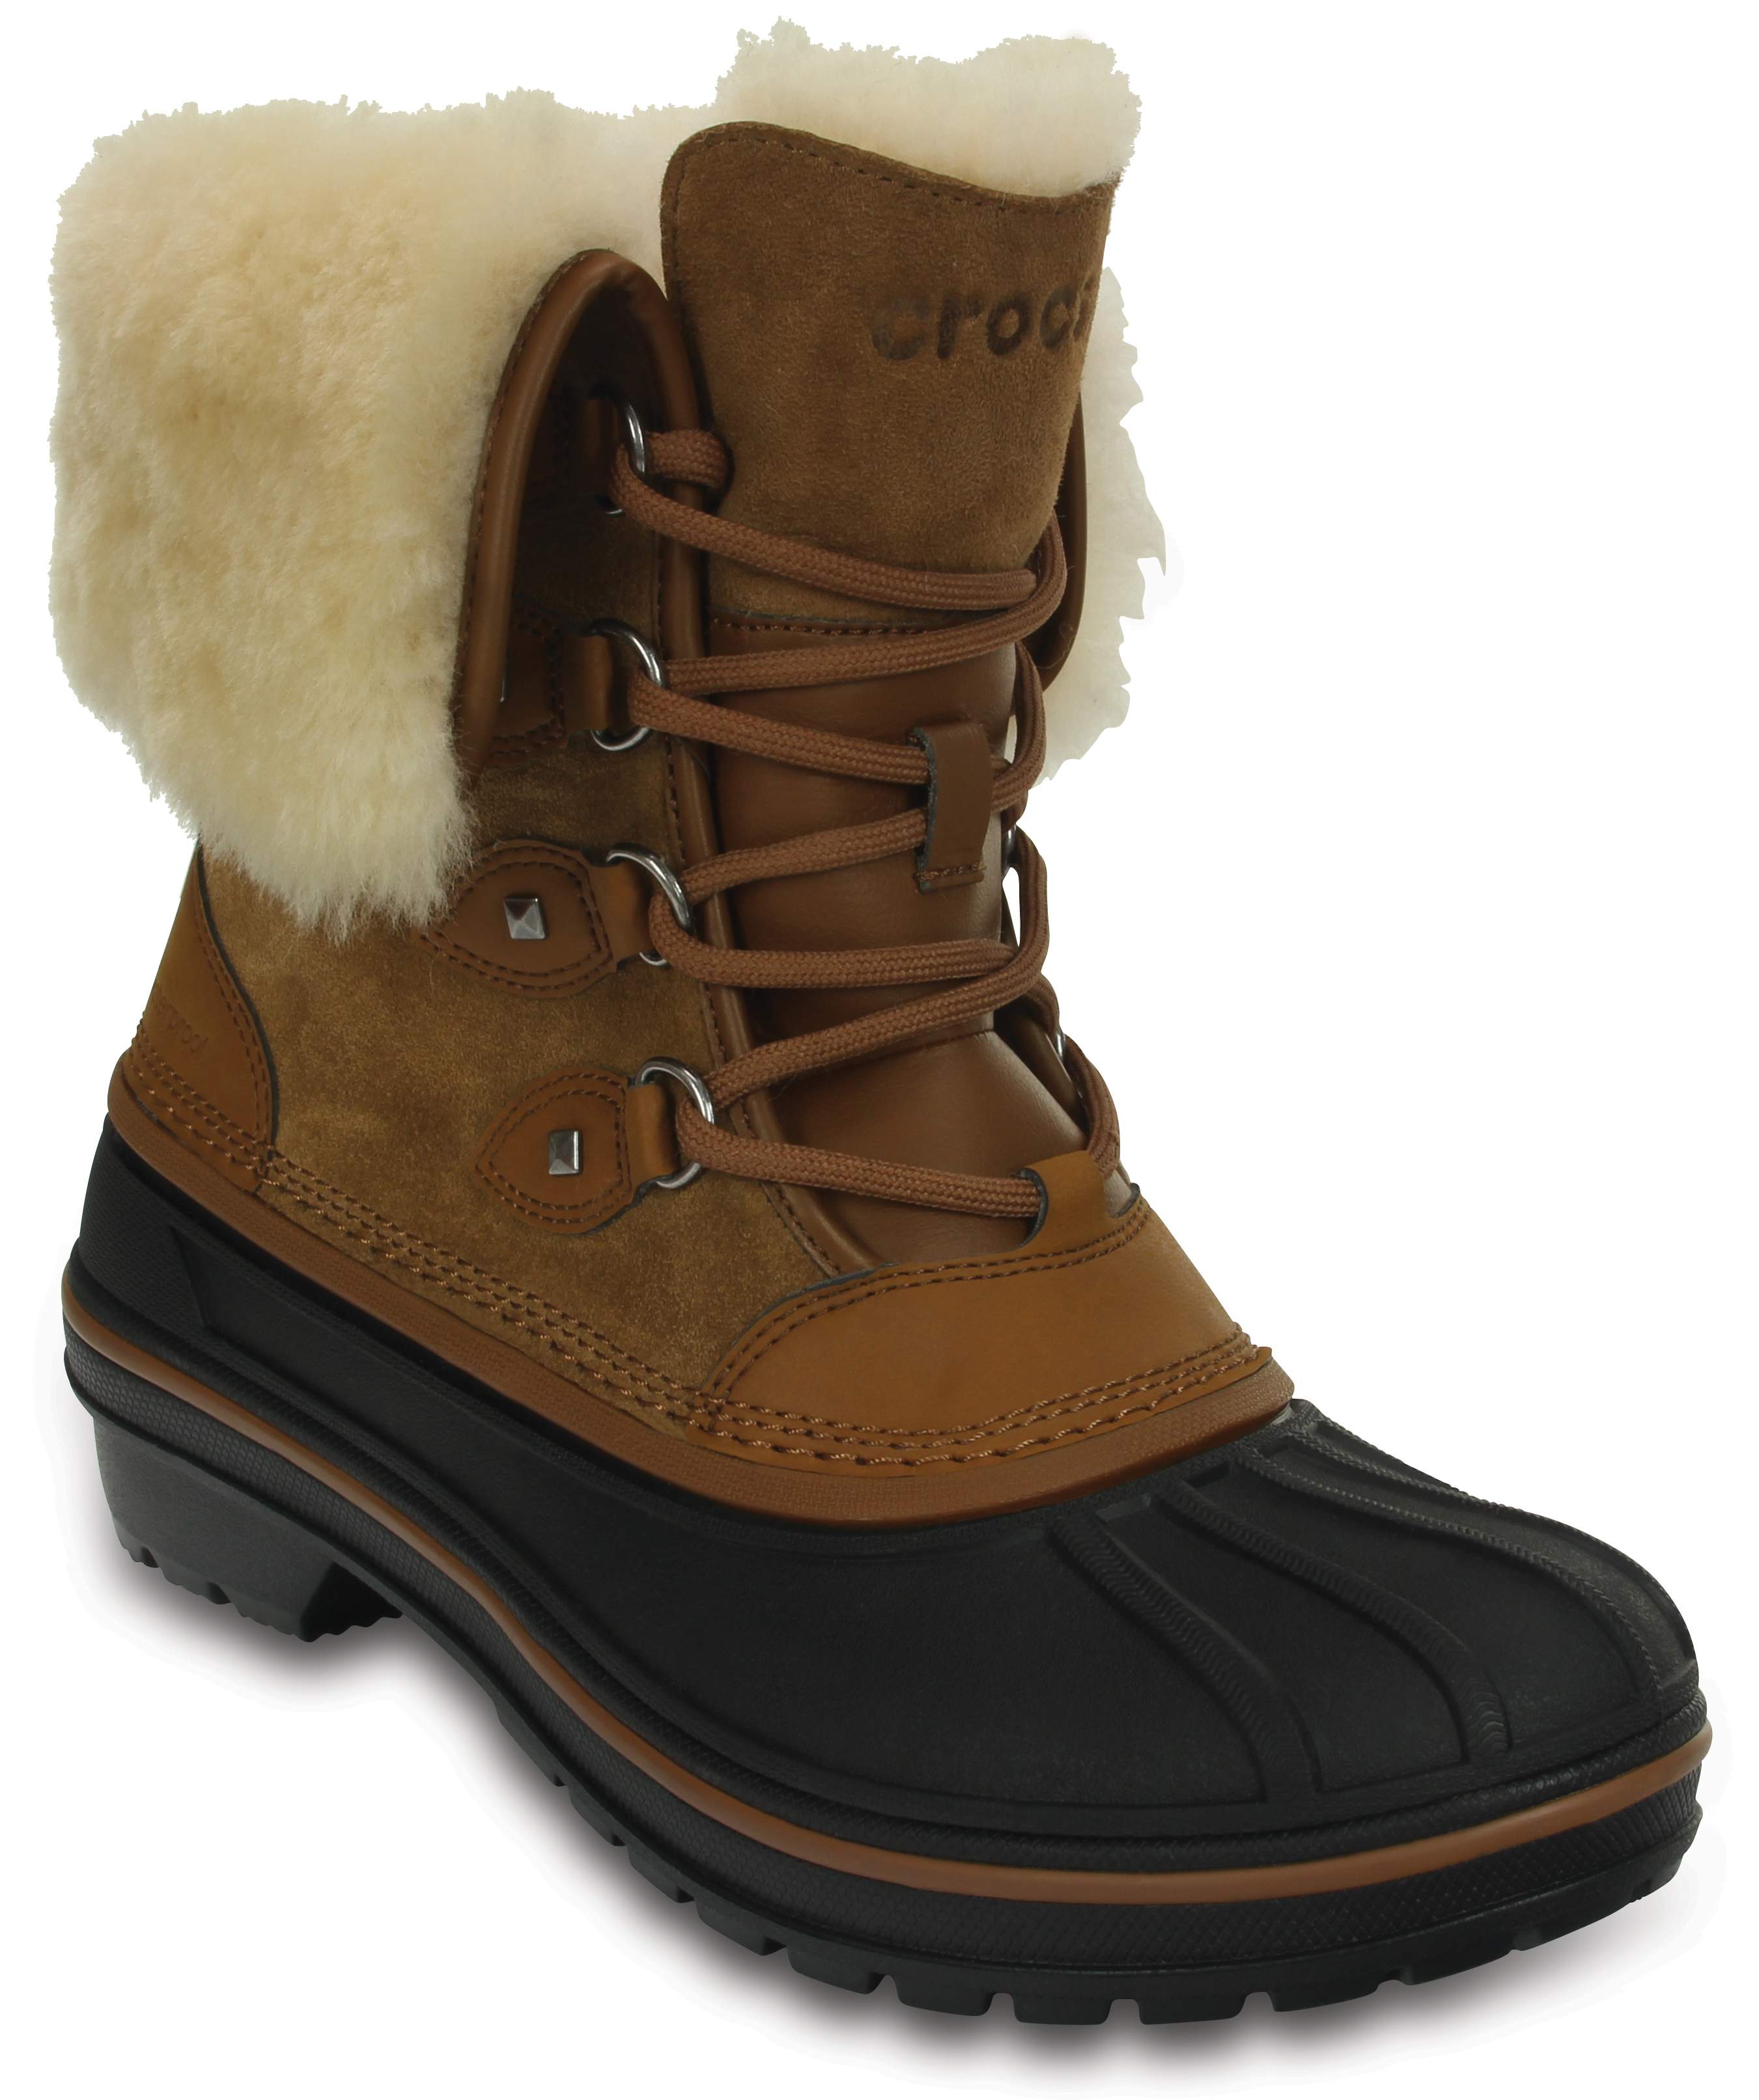 crocs girls winter boots